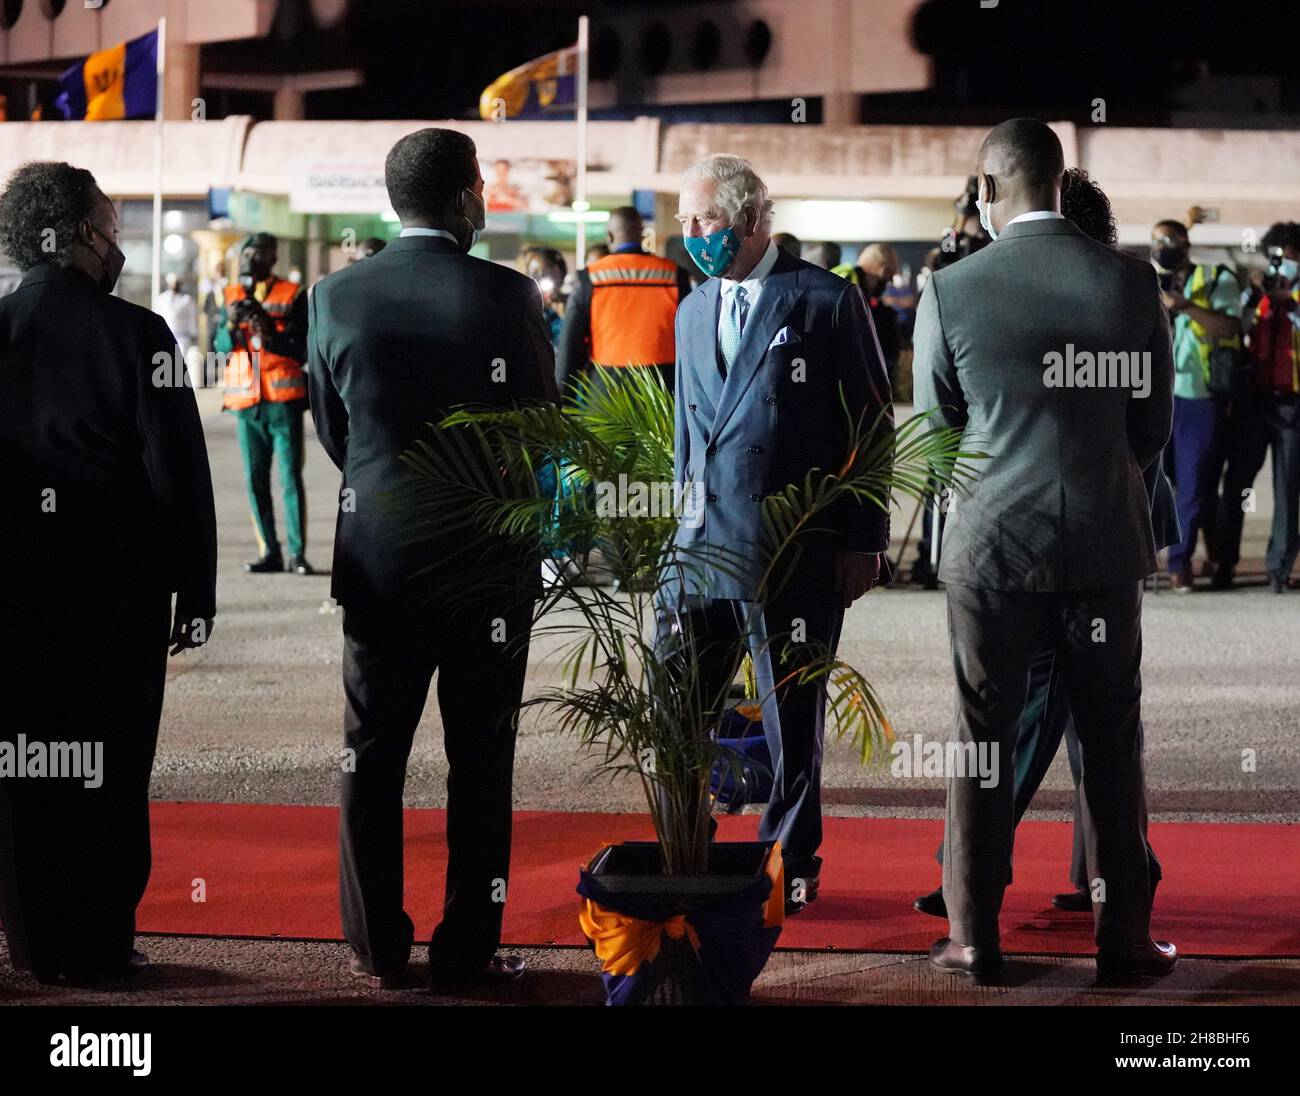 Der Prinz von Wales wird von versammelten Würdenträgern und Mitgliedern des Militärs begrüßt, als er am Grantley Adams International Airport, Bridgetown, Barbados, ankommt. Bilddatum: Sonntag, 28. November 2021. Stockfoto